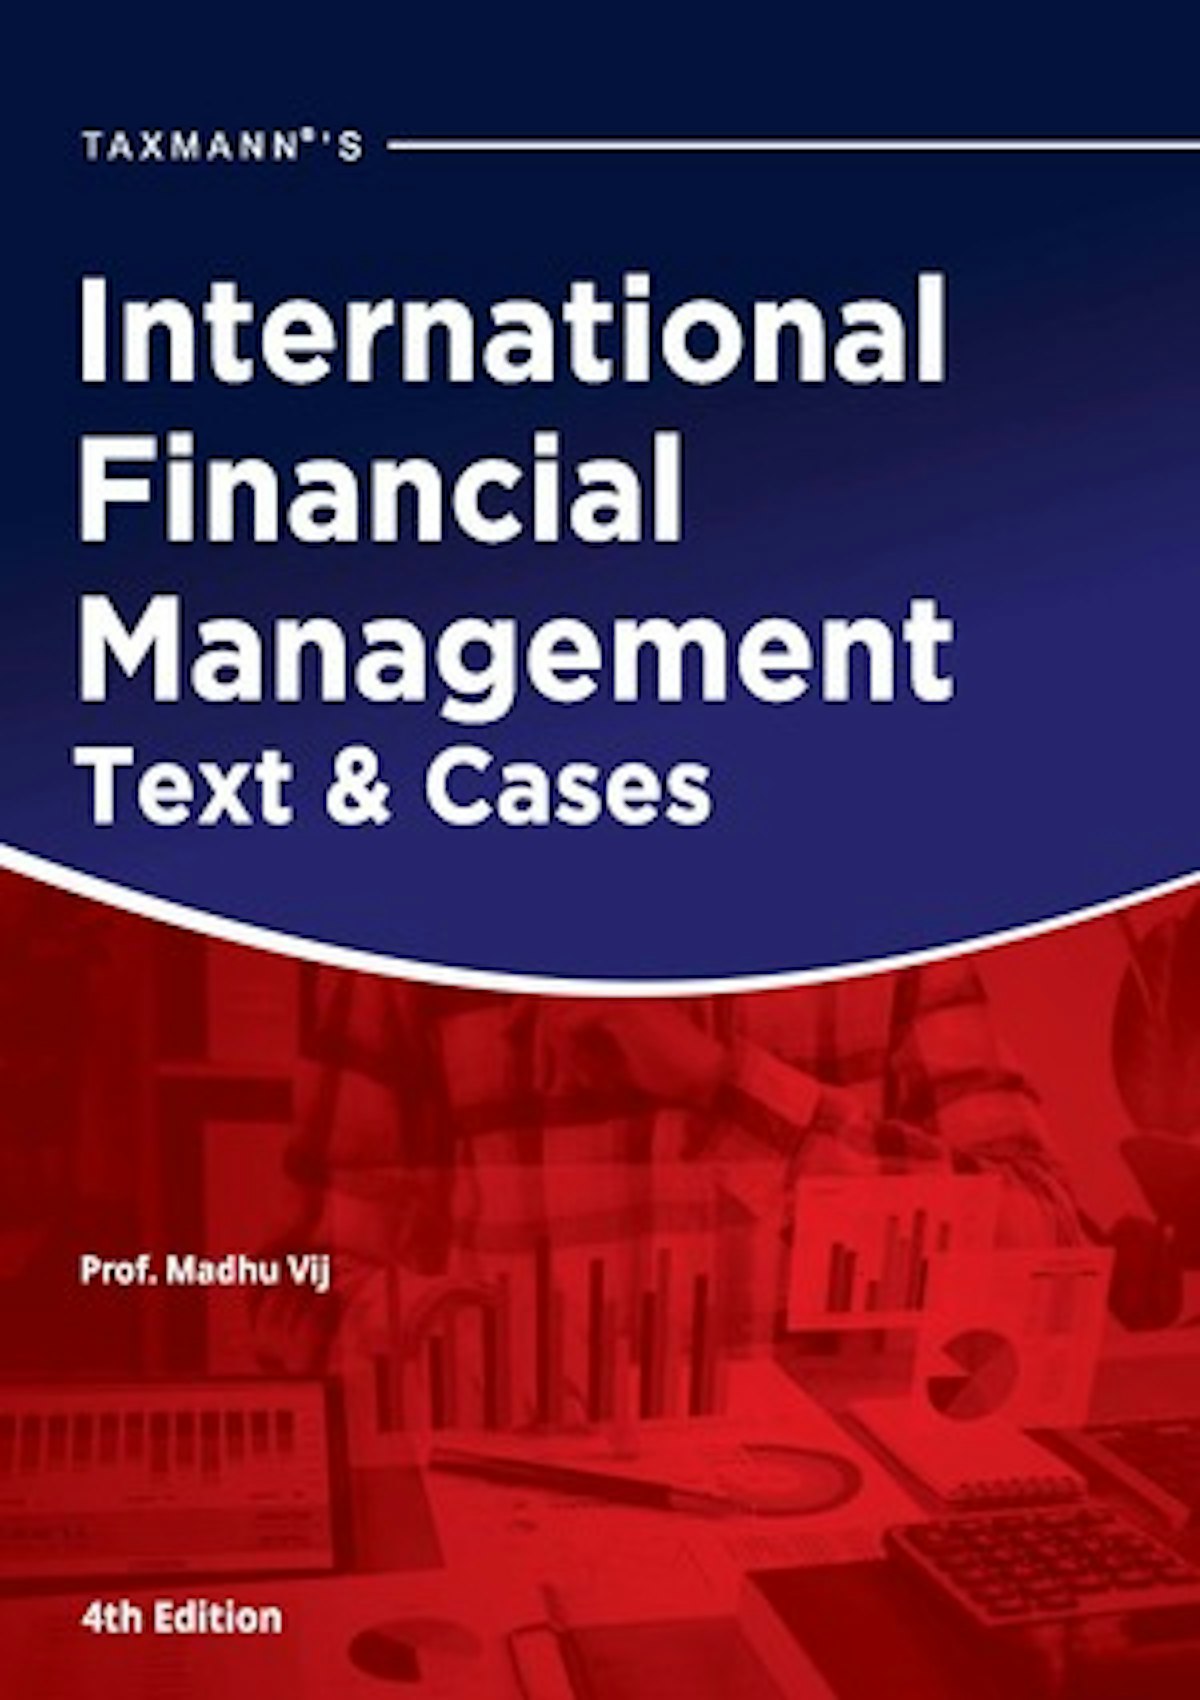 International Financial Management Text & Cases Madhu Vij Taxmann Books